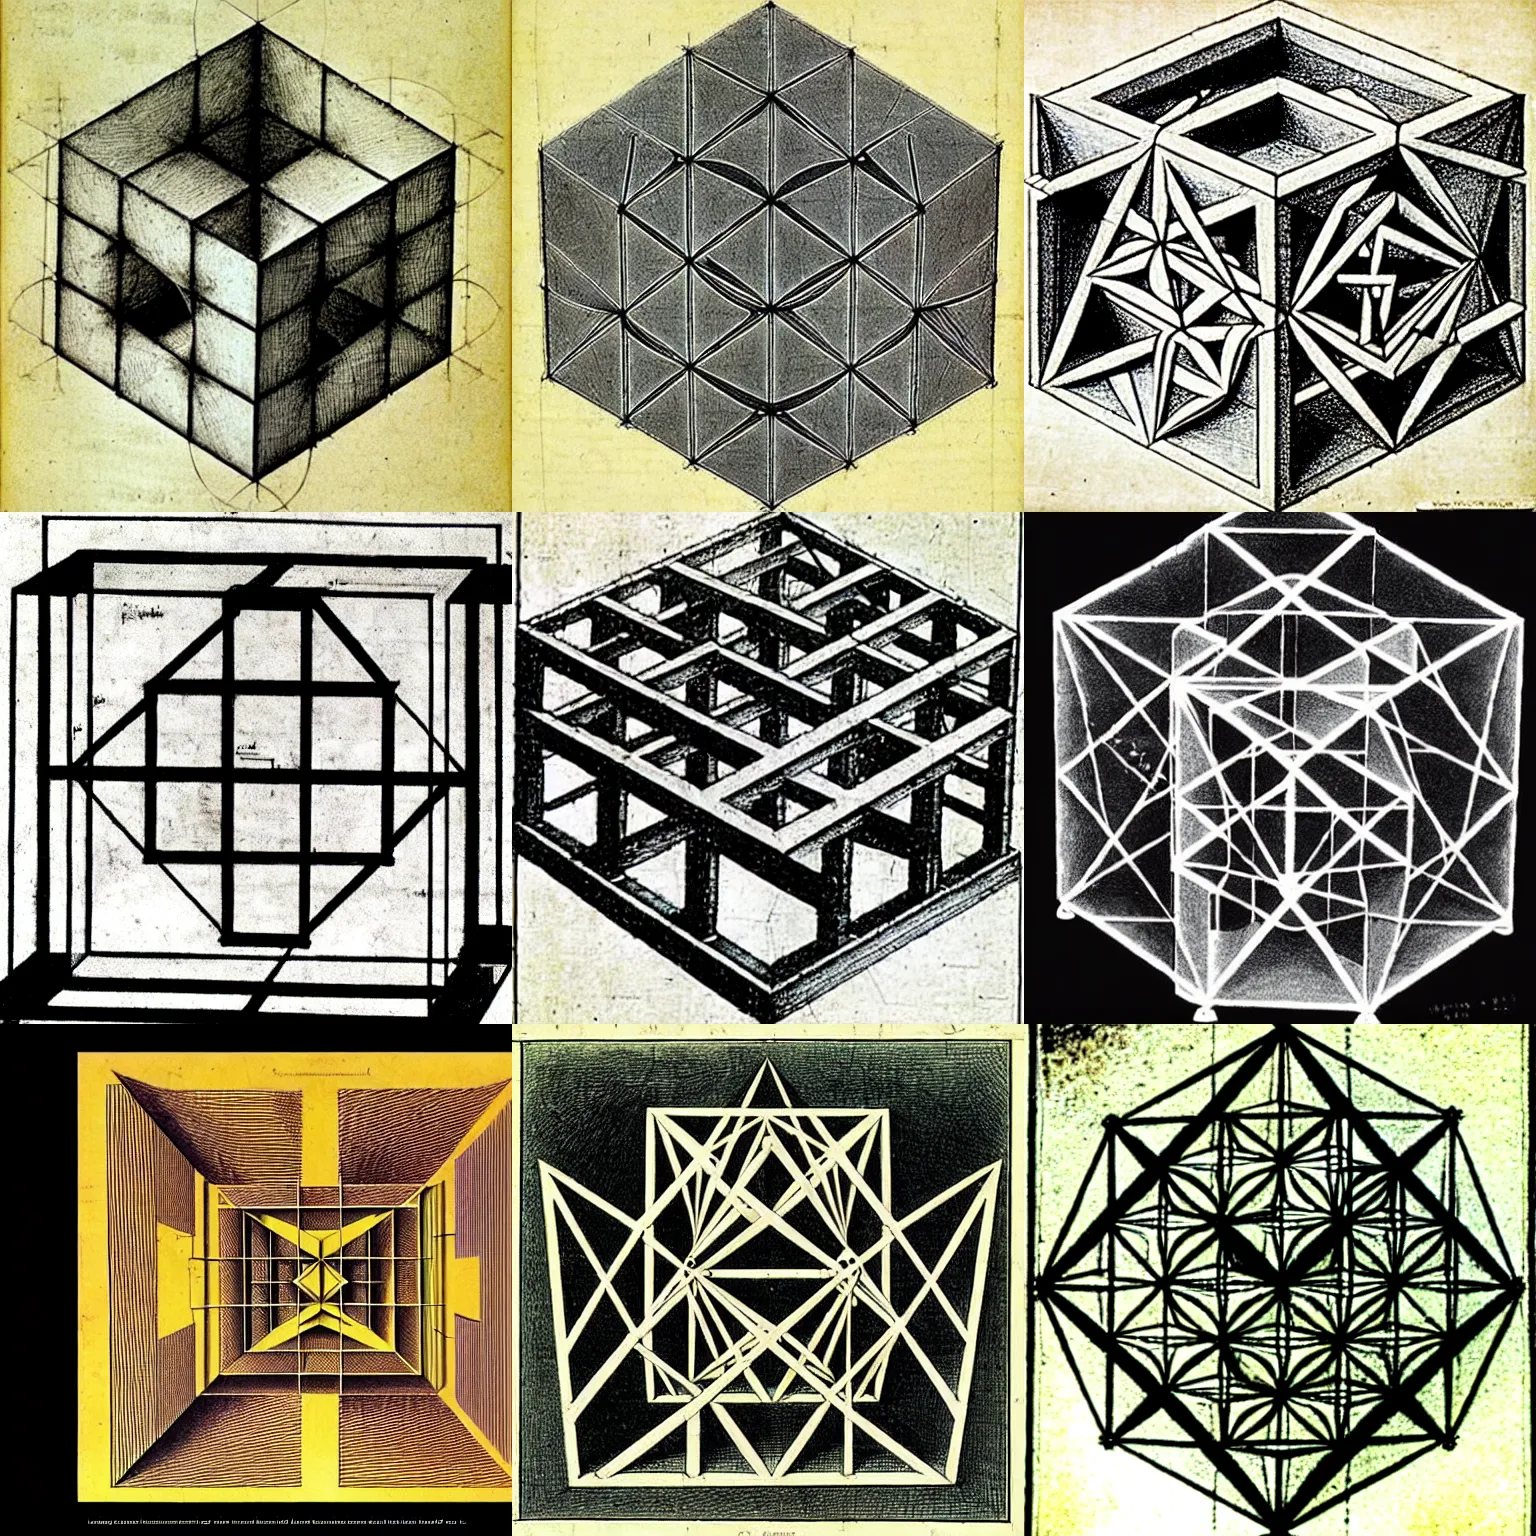 Prompt: a diagram of a 4 - dimensional hypercube by leonardo da vinci and m c escher